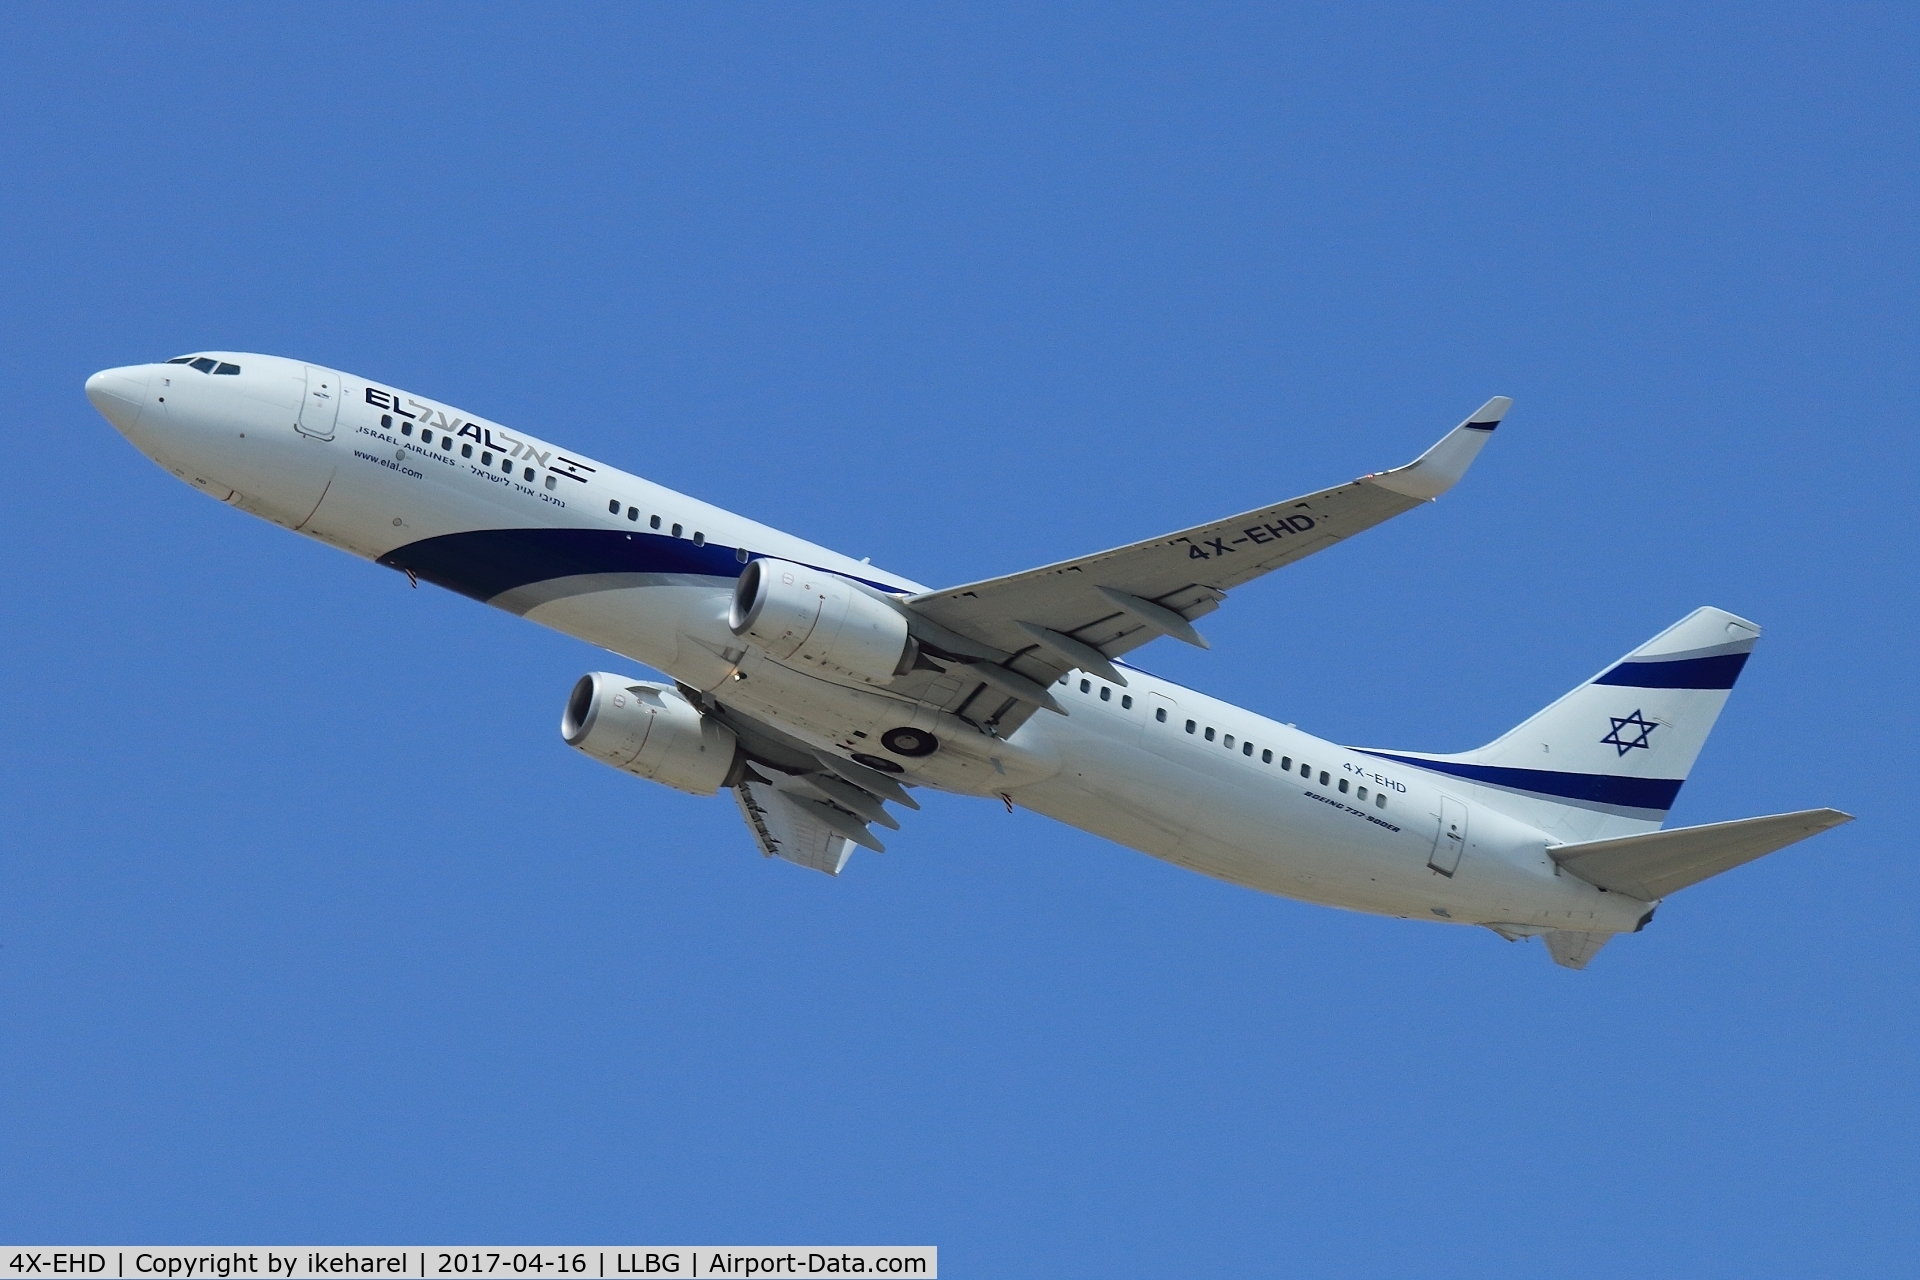 4X-EHD, 2015 Boeing 737-958/ER C/N 41555, Flight to Paris take-off from runway 26.